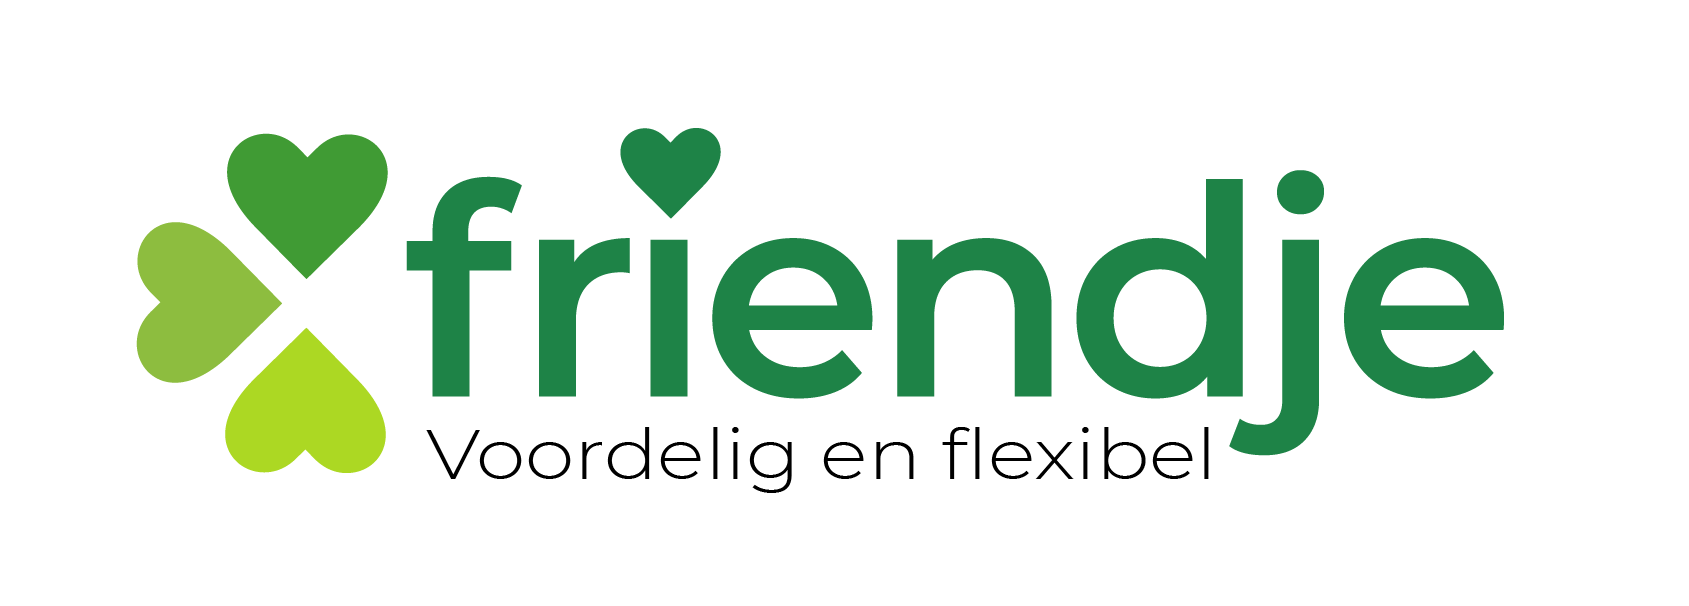 Logo 'friendje'